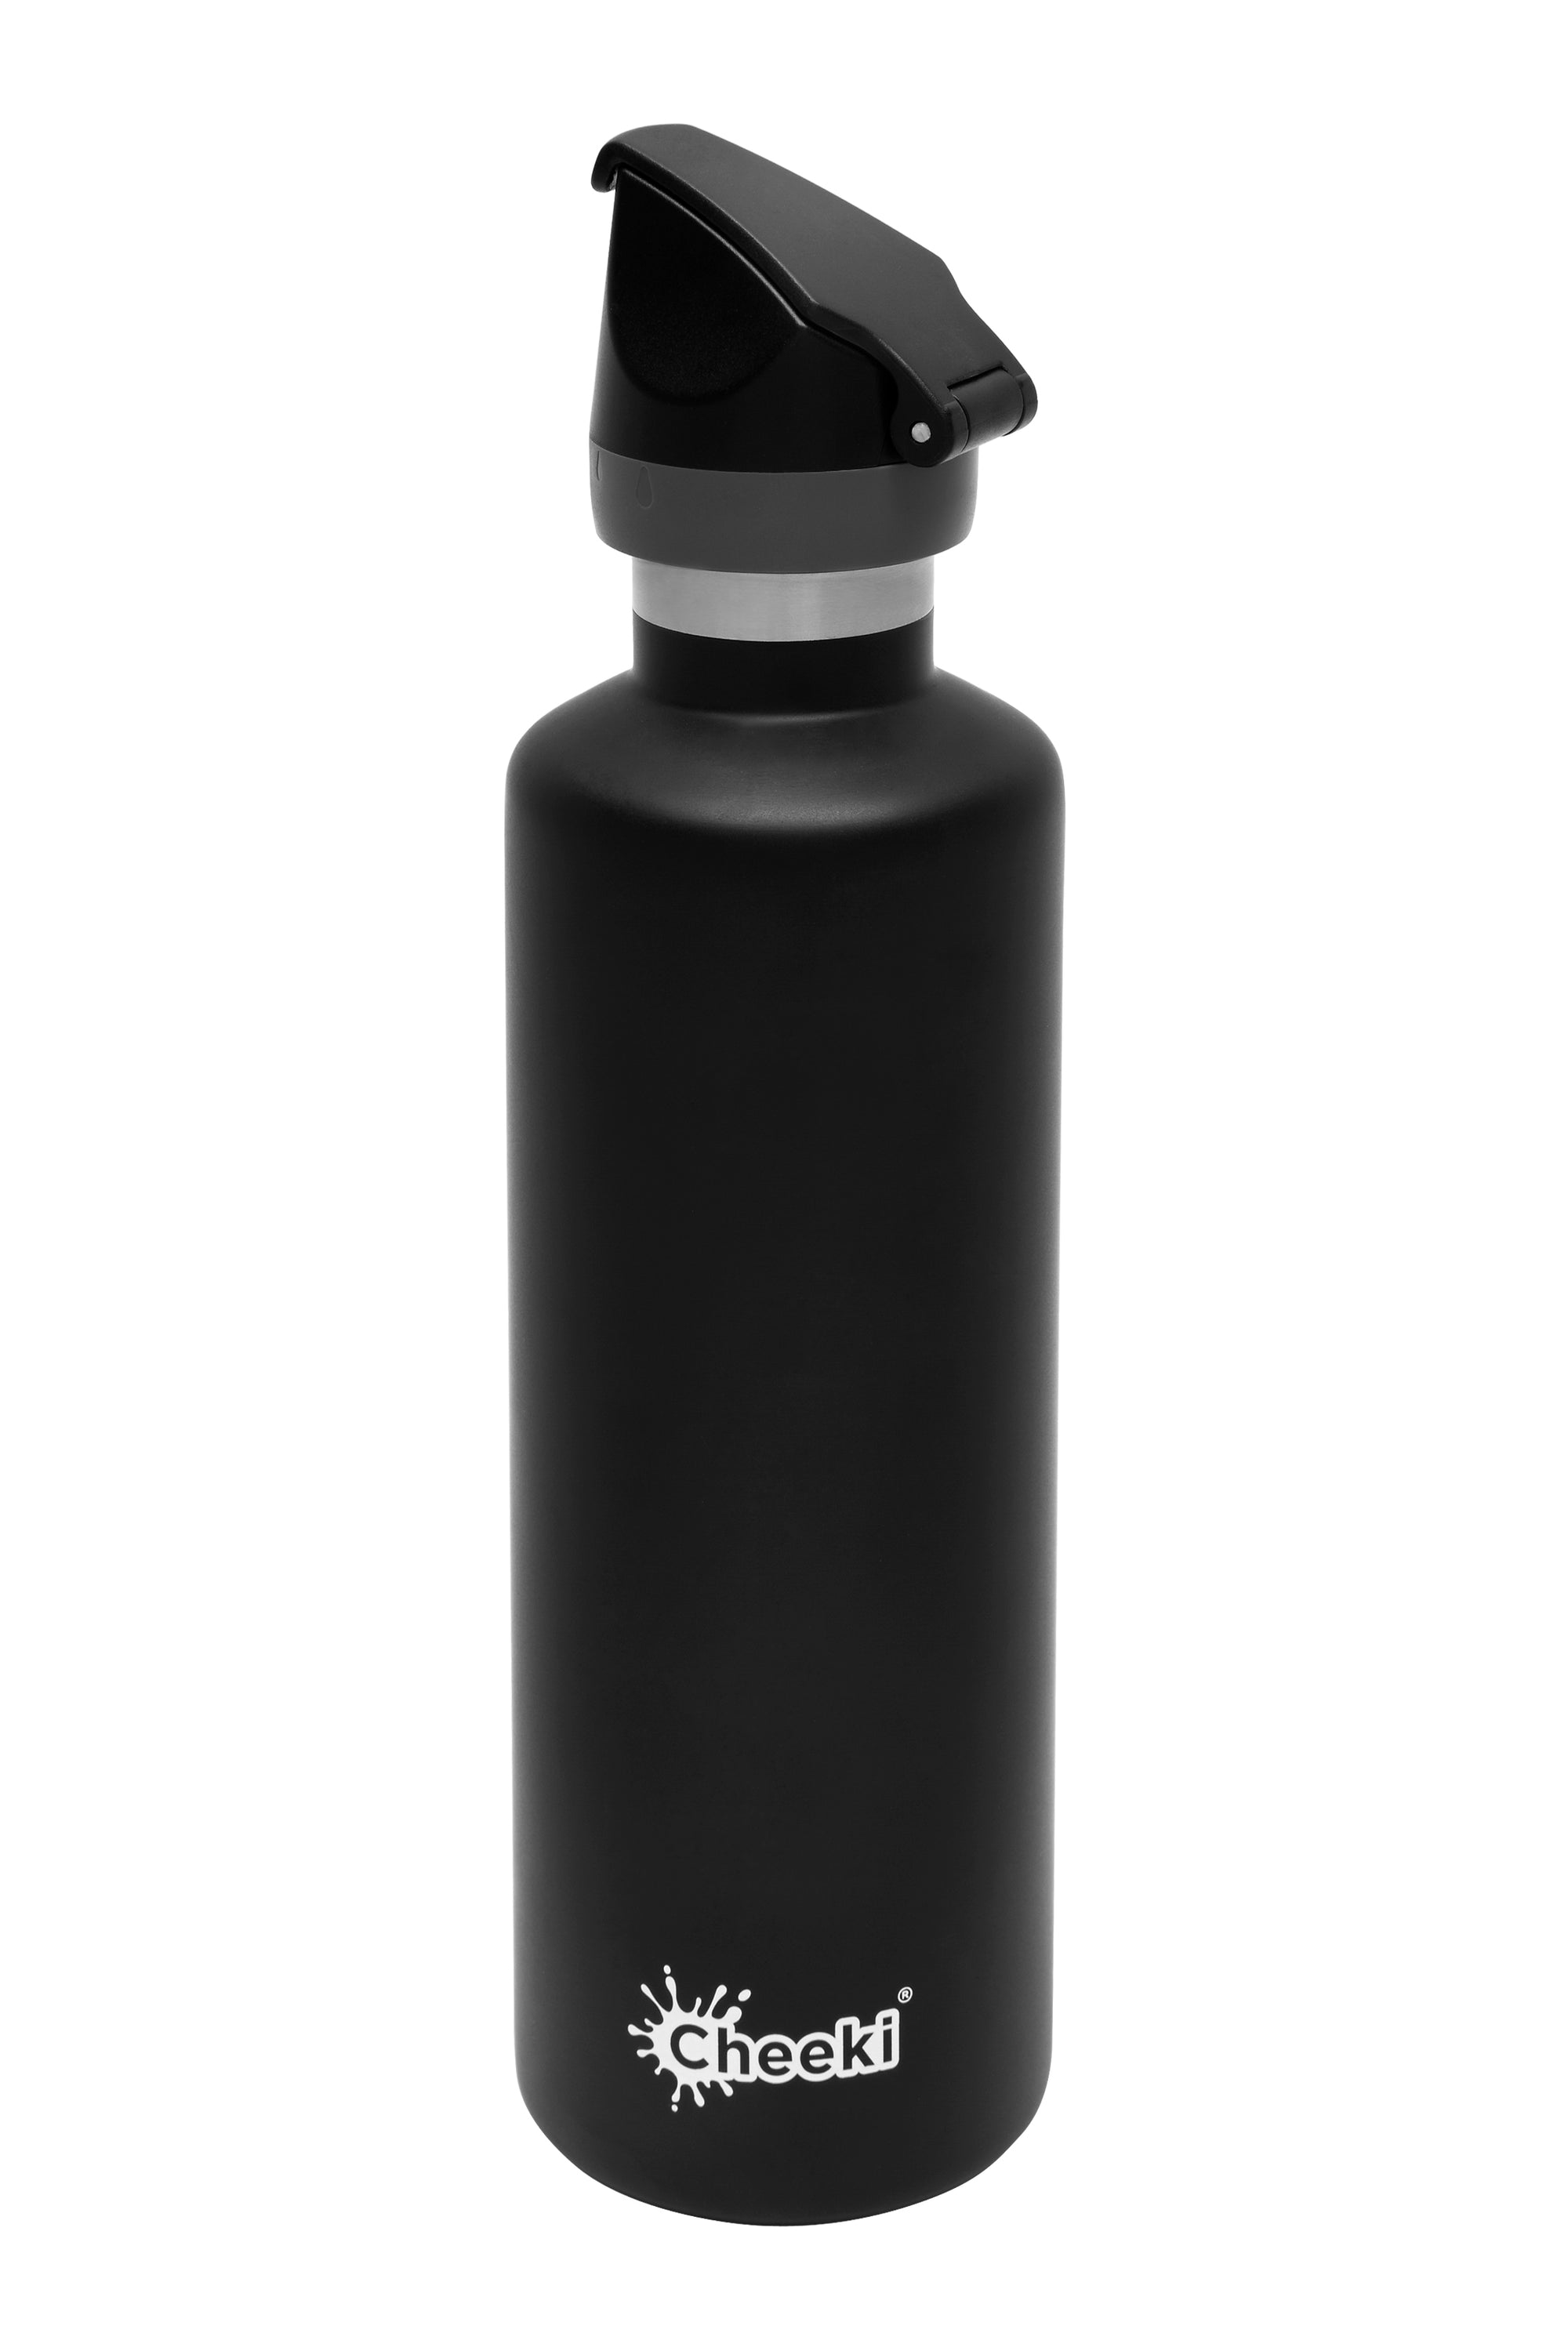 不鏽鋼保溫樽 600ml Insulated Active Bottle